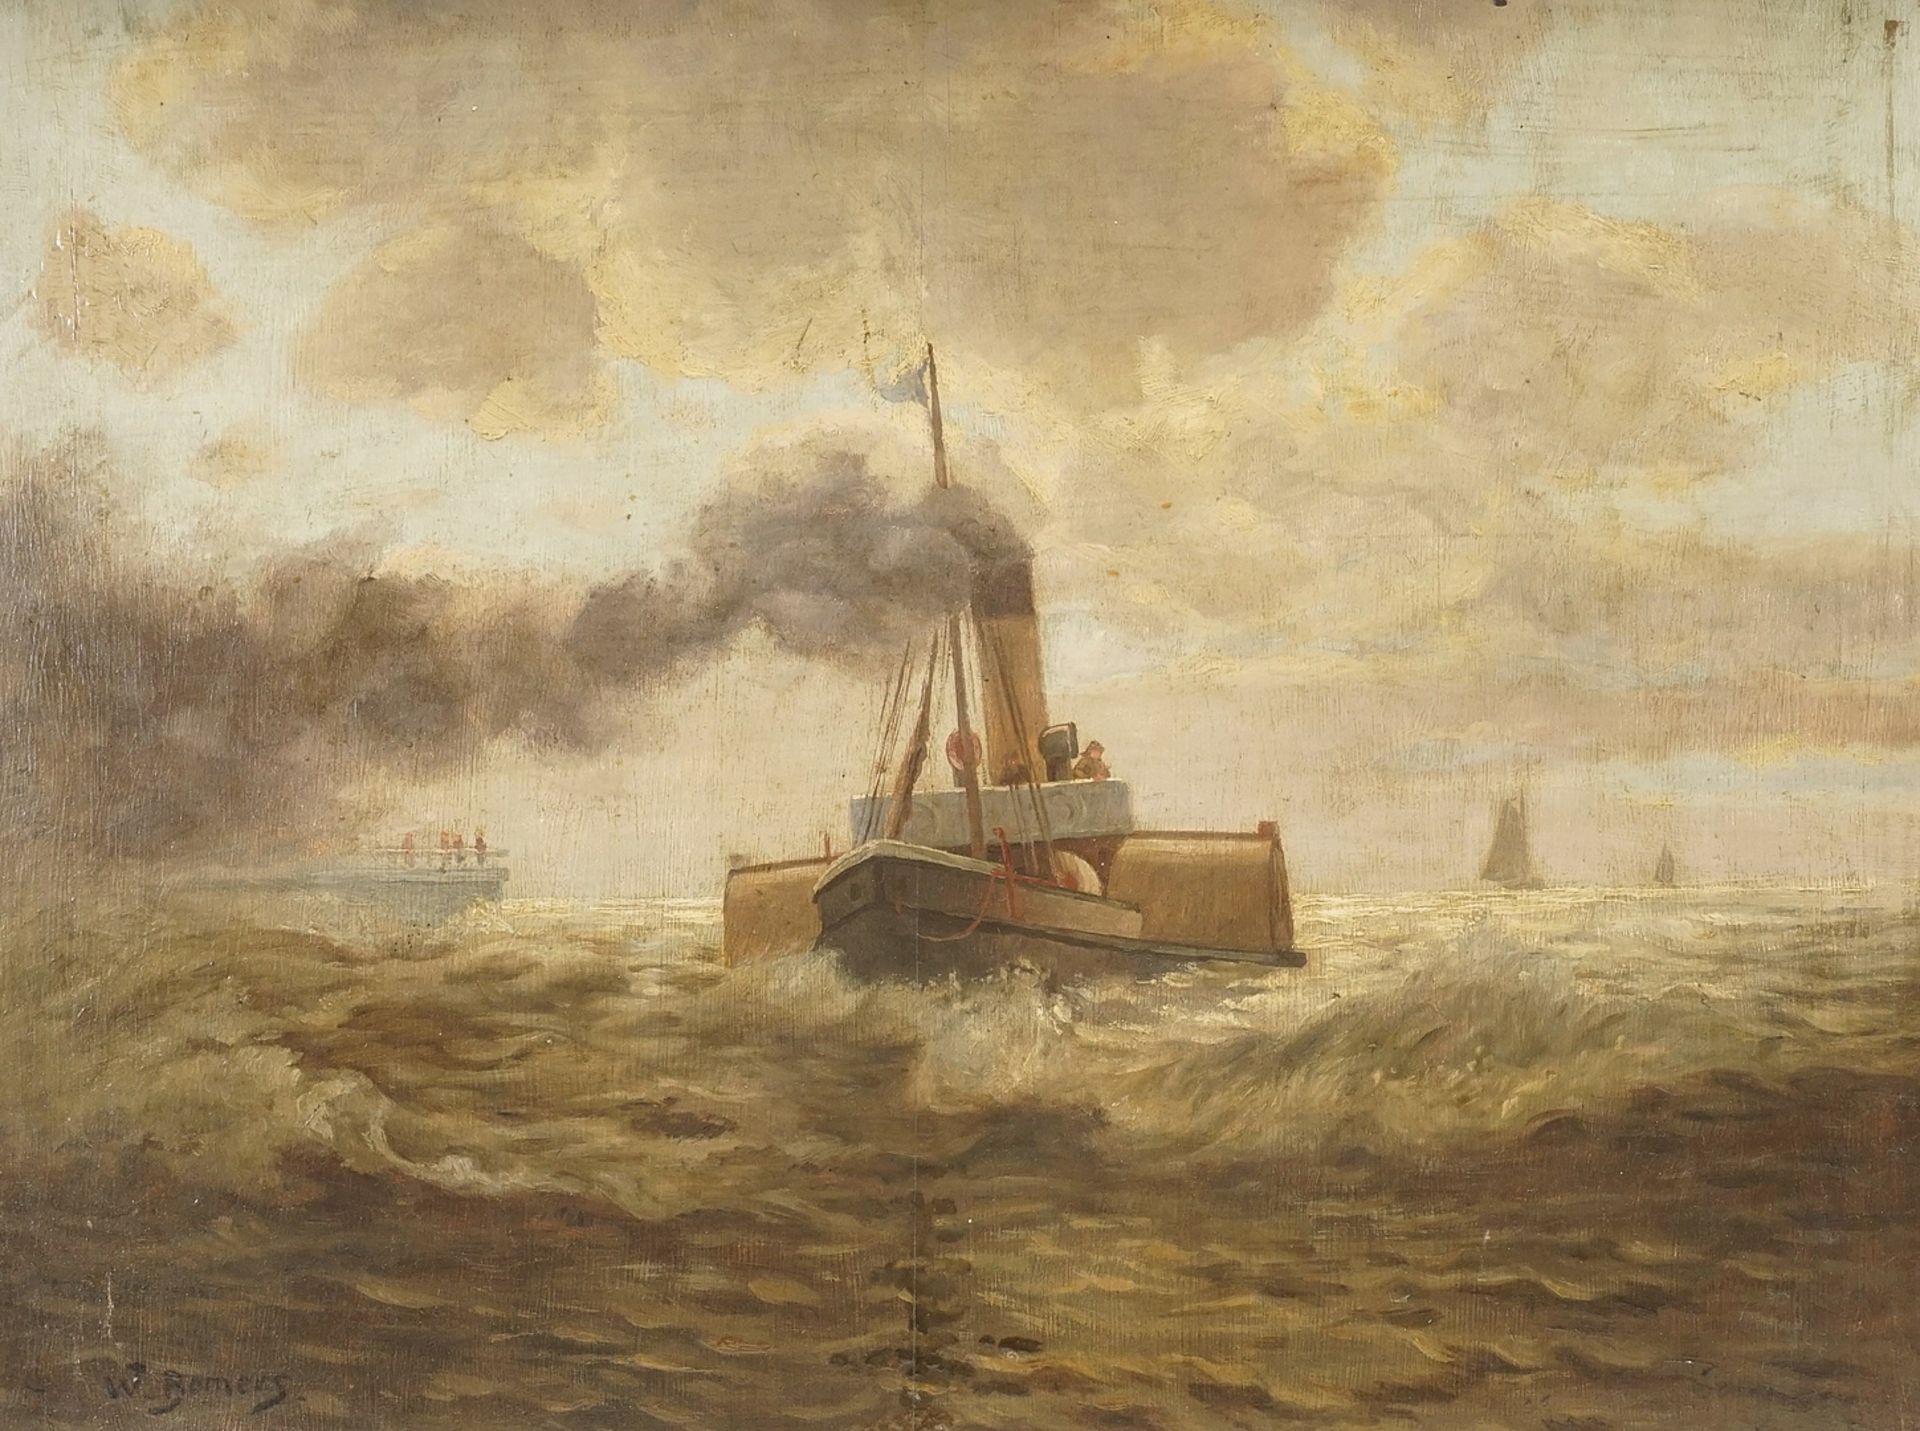 W. Bomers, Steamship